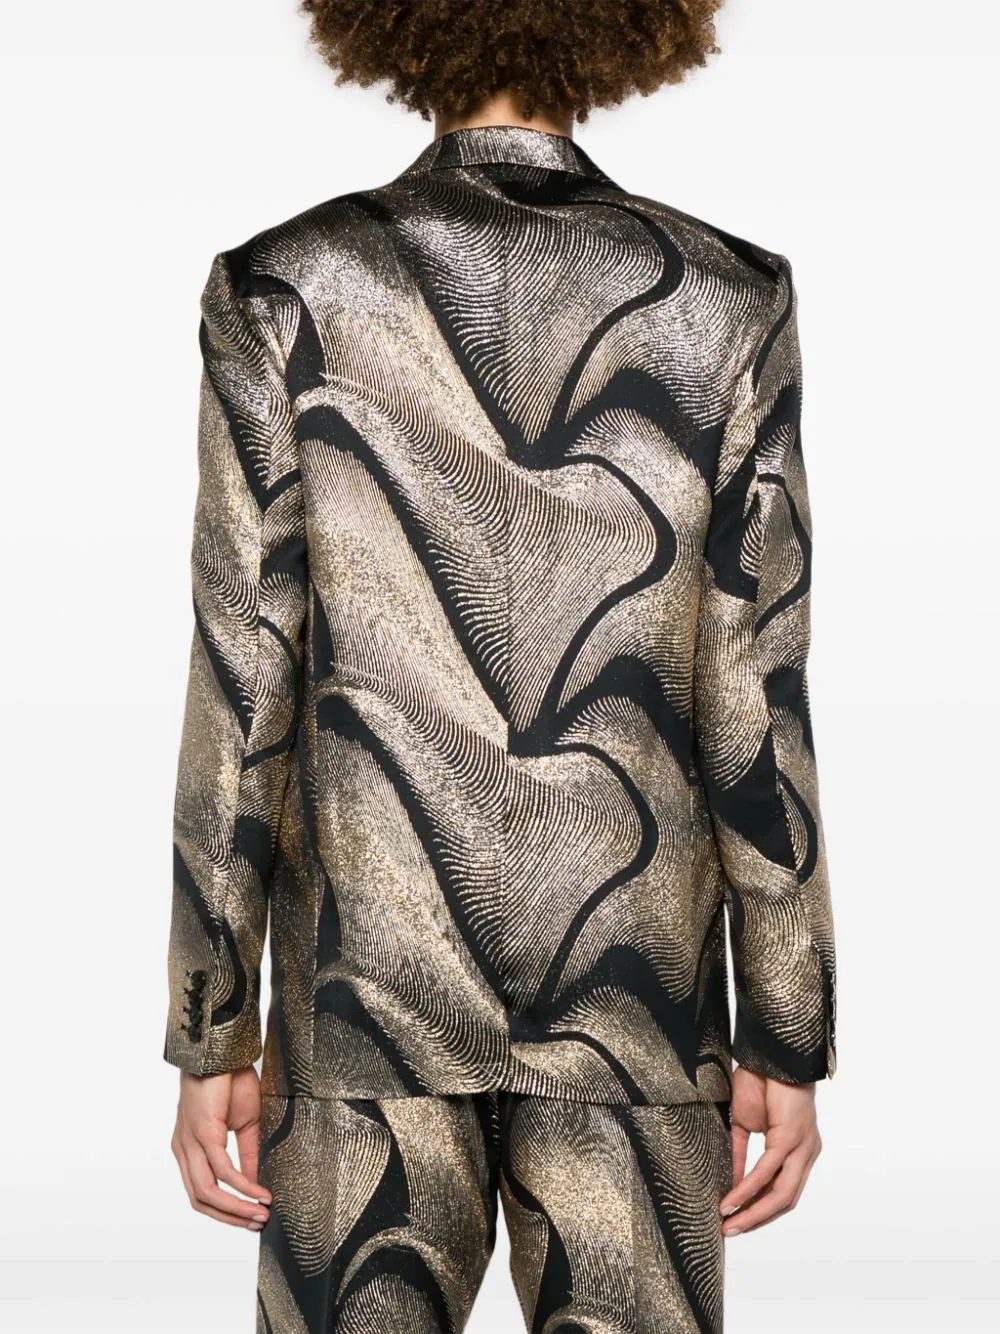 Создаем новогодний образ: пиджак с мехом, рубашка с пайетками и сиреневые лоферы